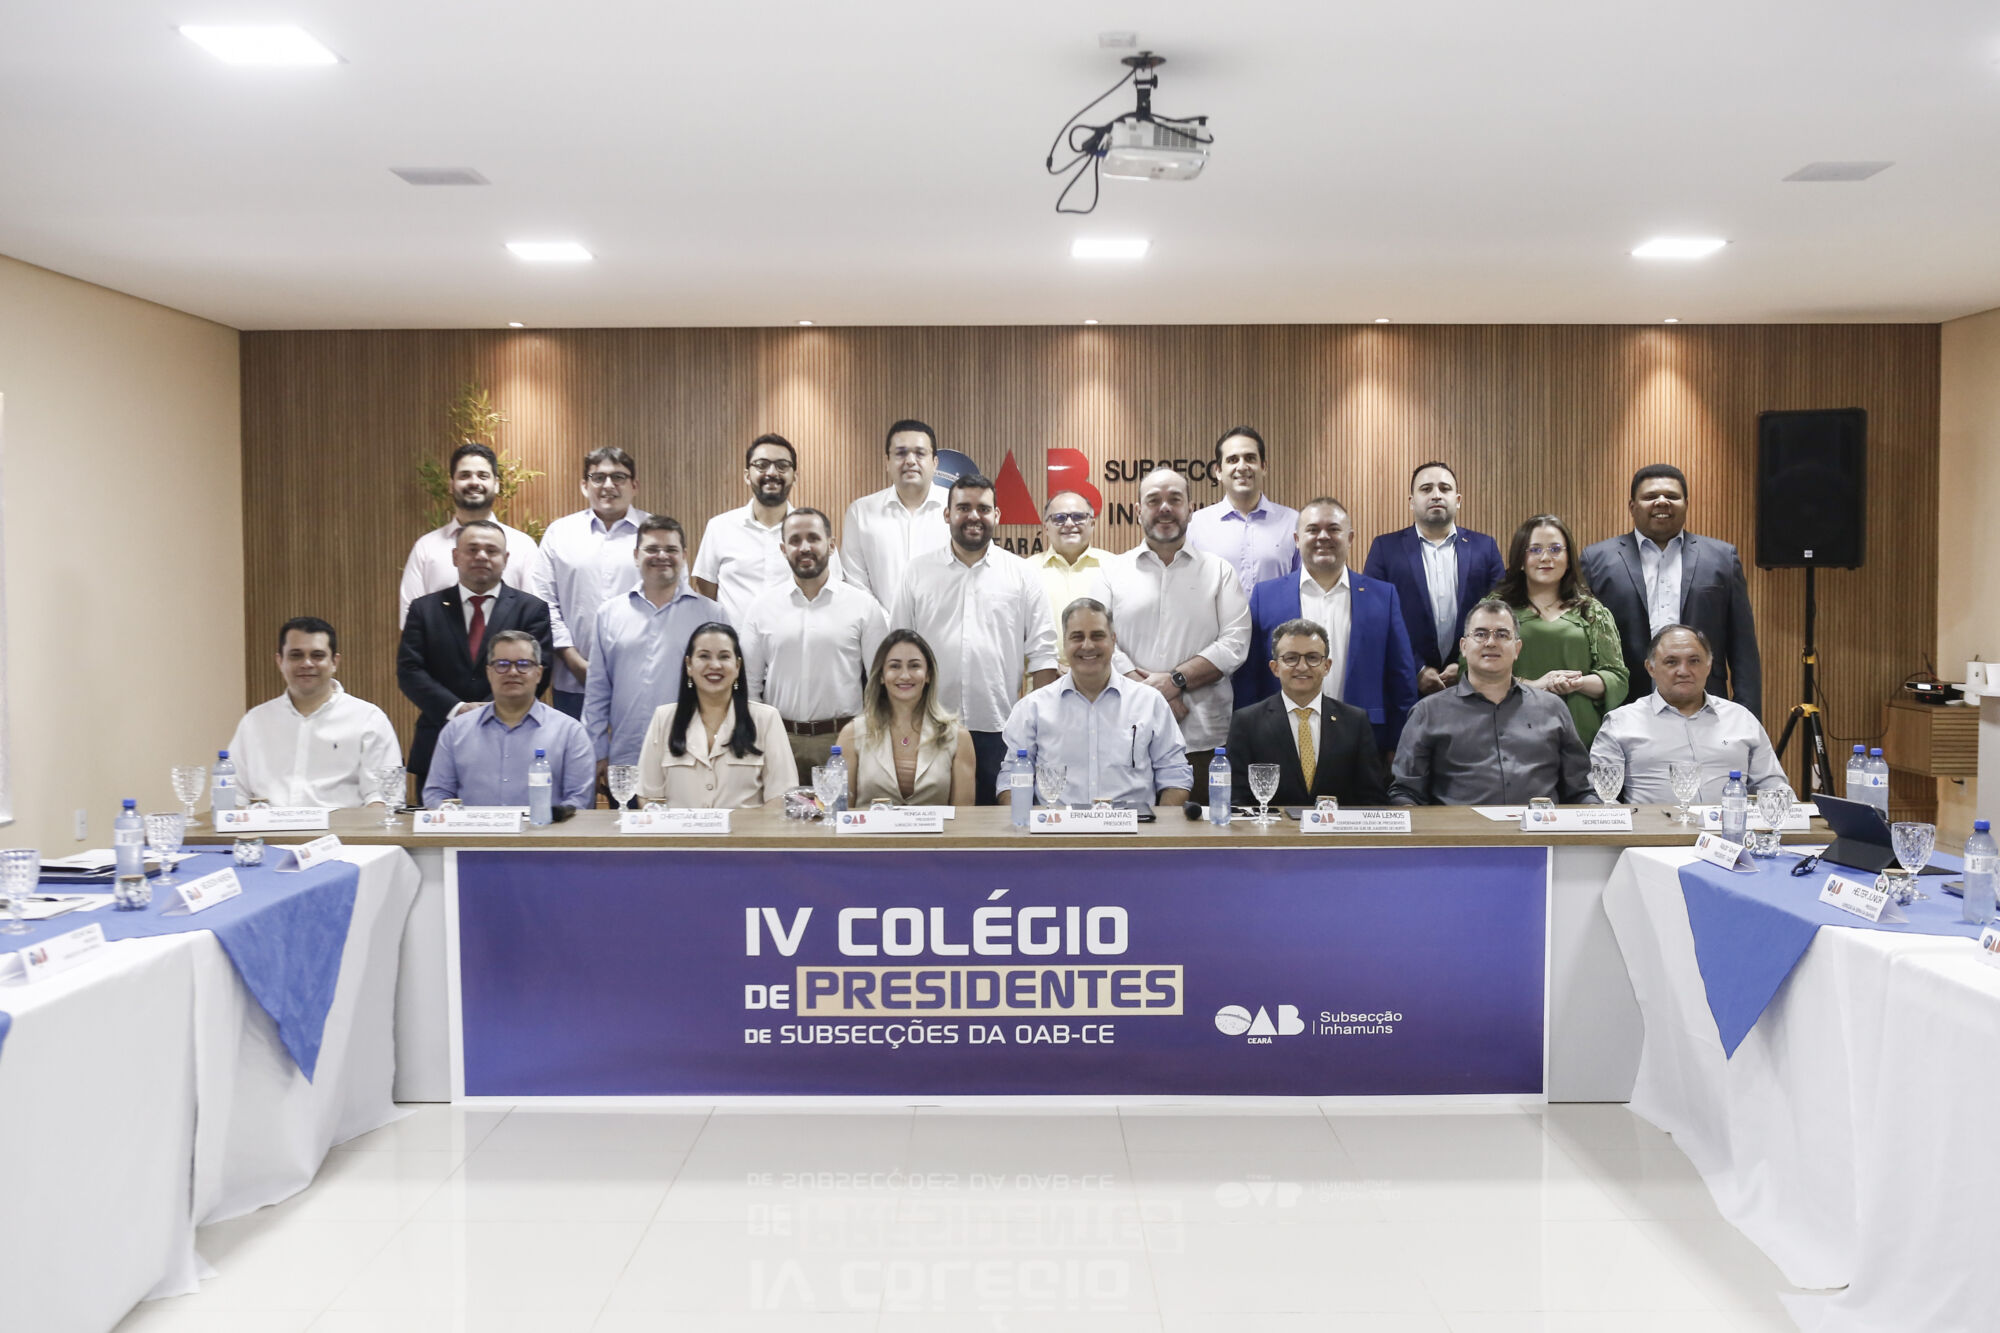 IV Colégio de Presidentes Debate Sobre Criação de Campanha de Valorização  da Advocacia Previdenciária – OAB-CE – Ordem dos Advogados do Estado do  Ceará